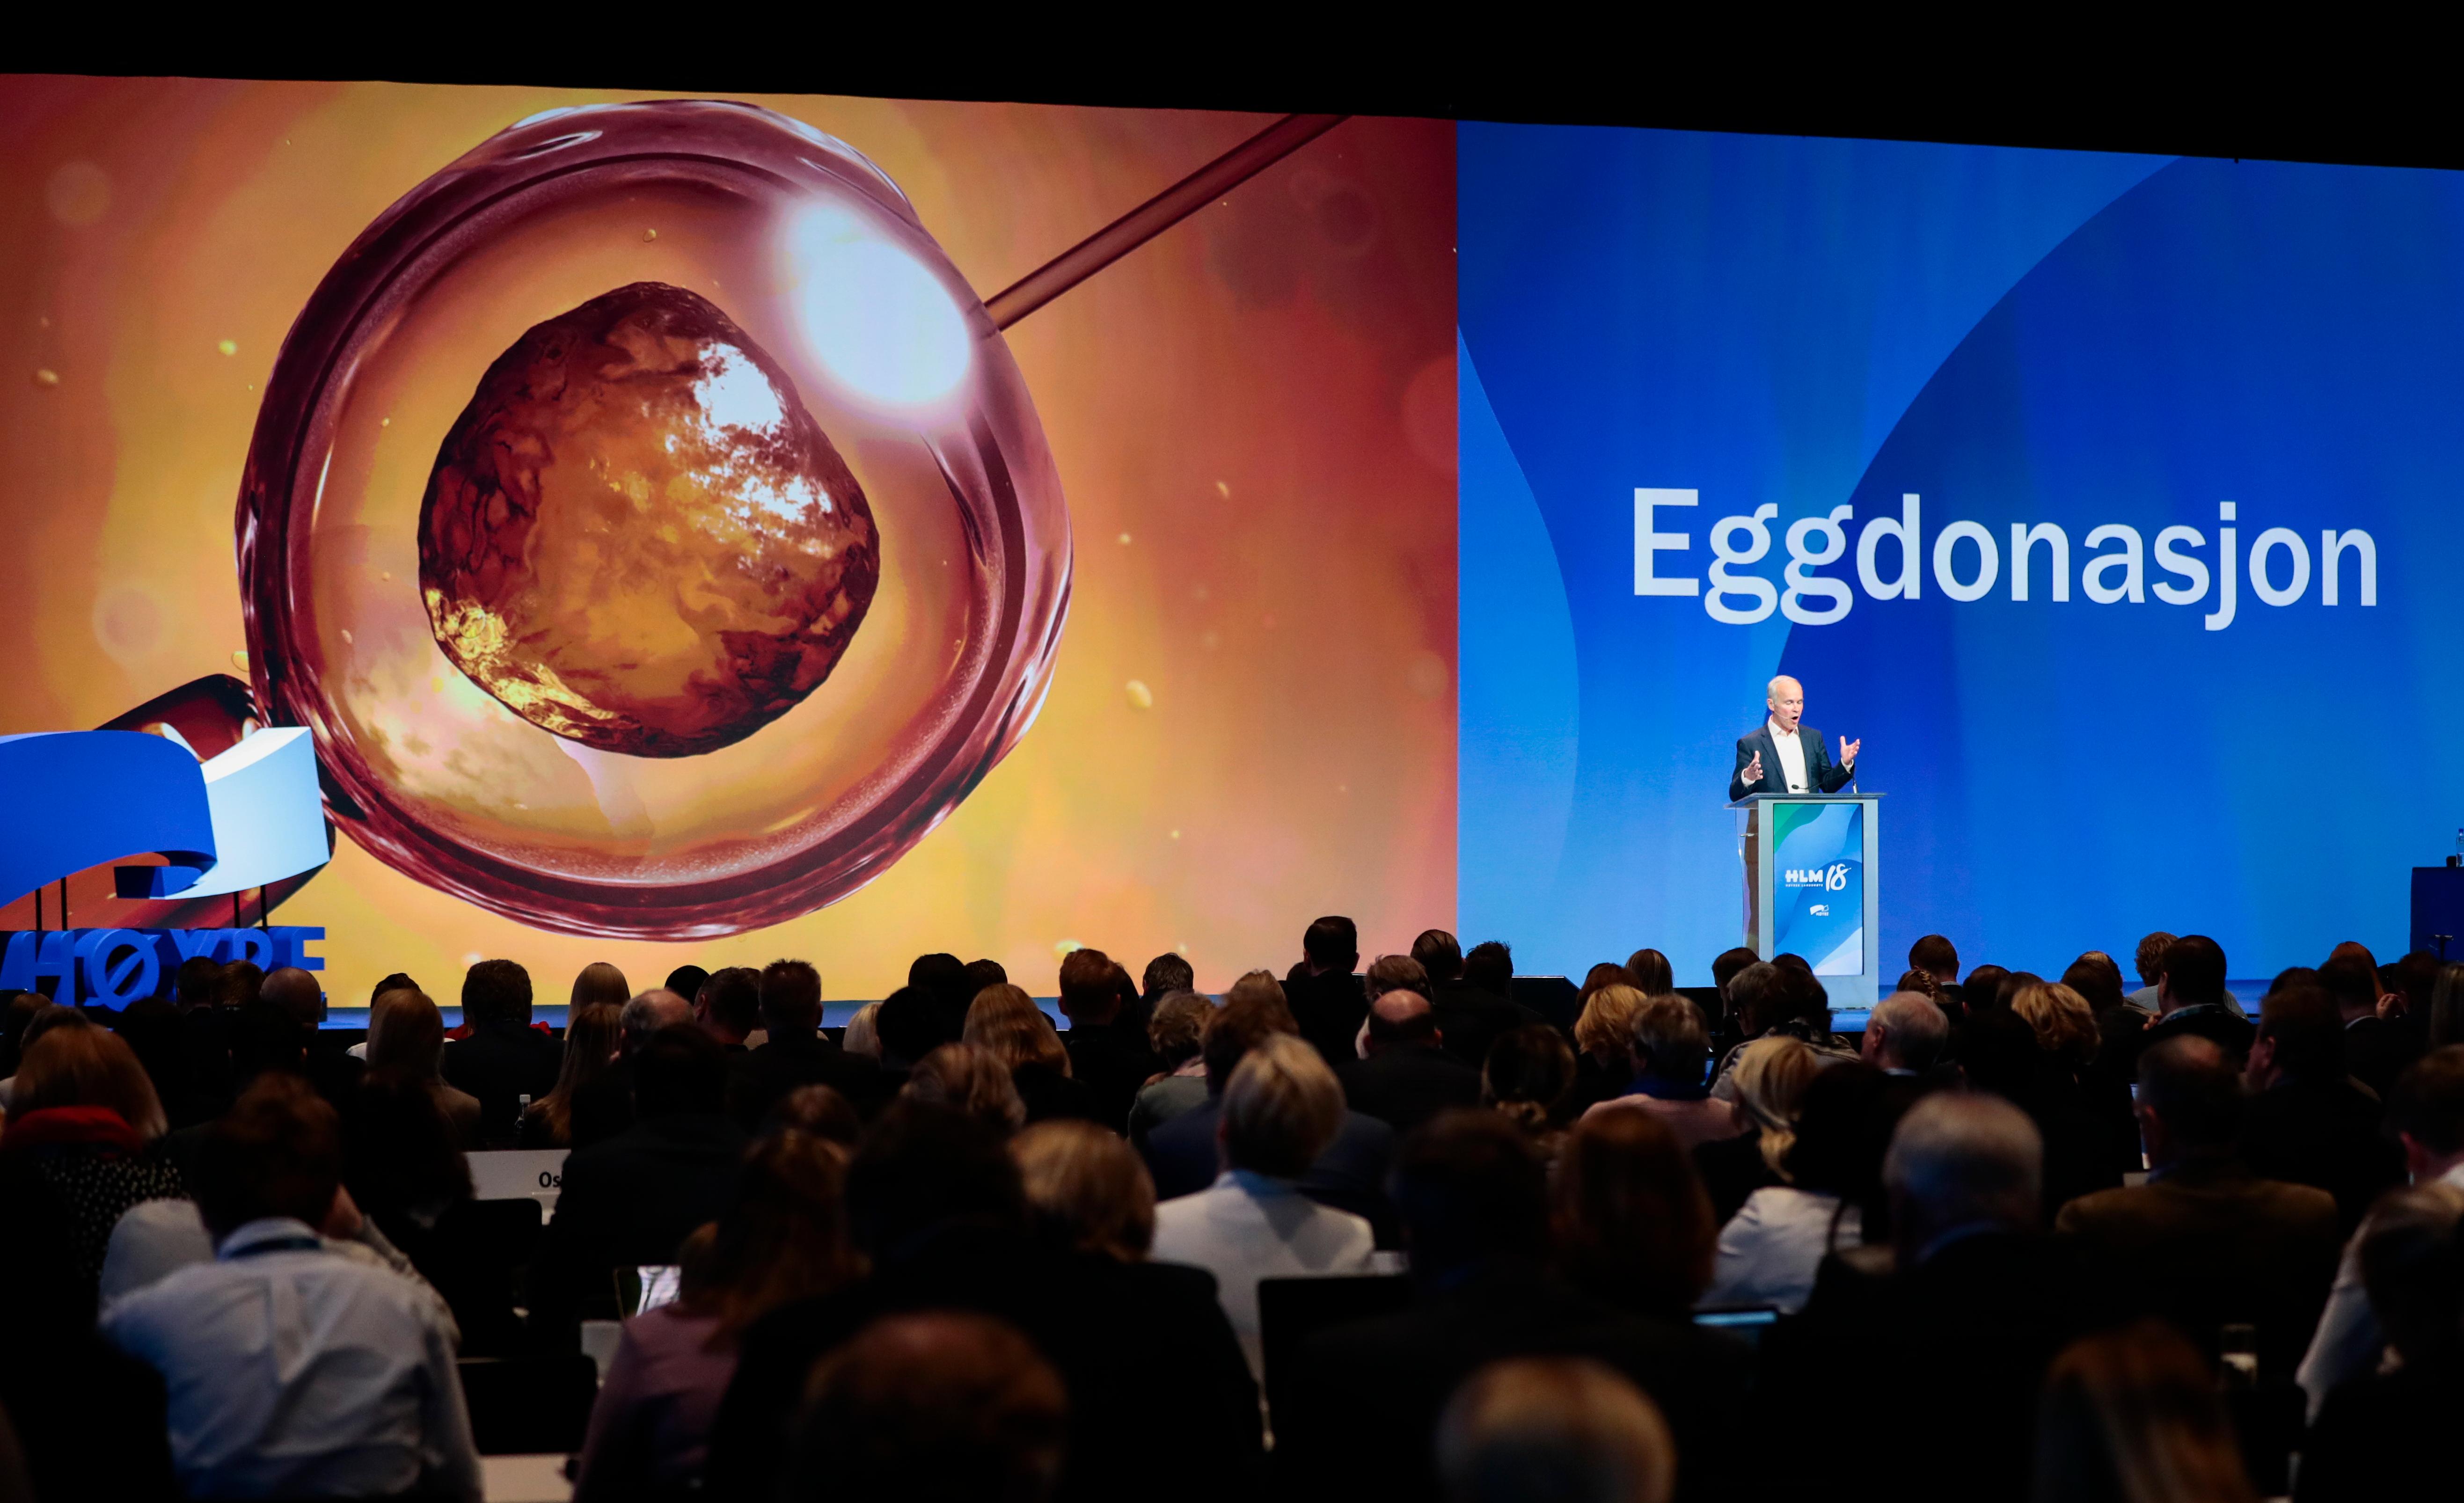 Høyre-profiler ser enden på KrF-vetorett om eggdonasjon